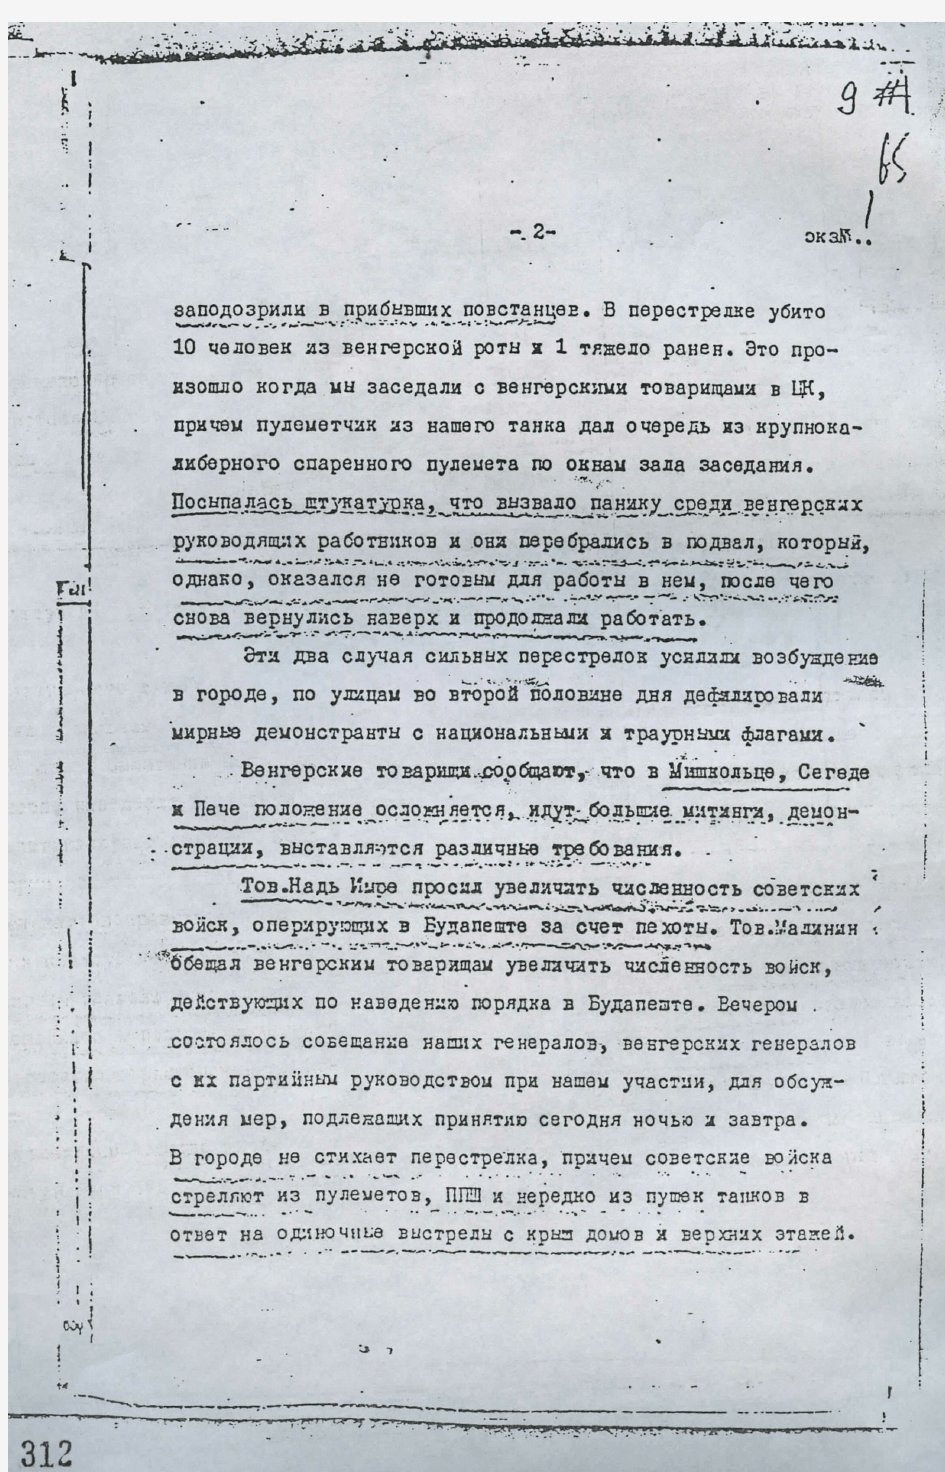 米高扬、苏斯洛夫给苏共中央的电报